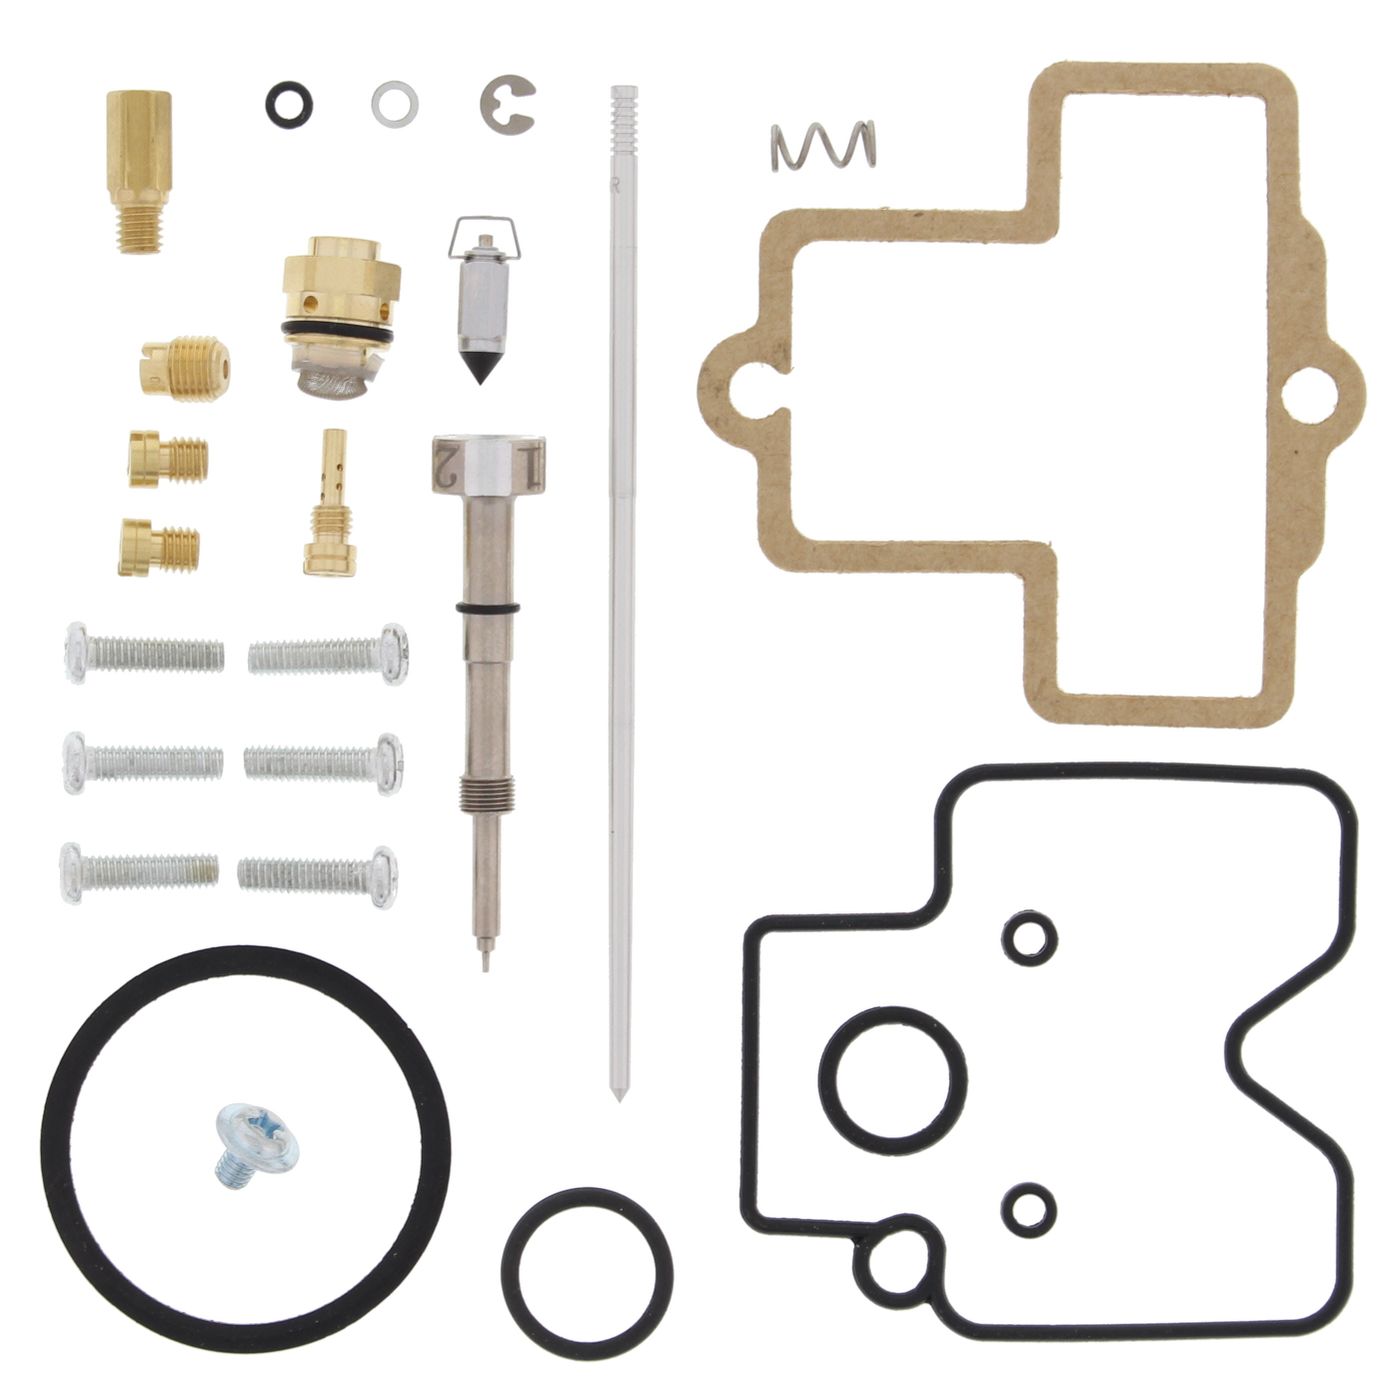 Wrp Carb Repair Kits - WRP261443 image